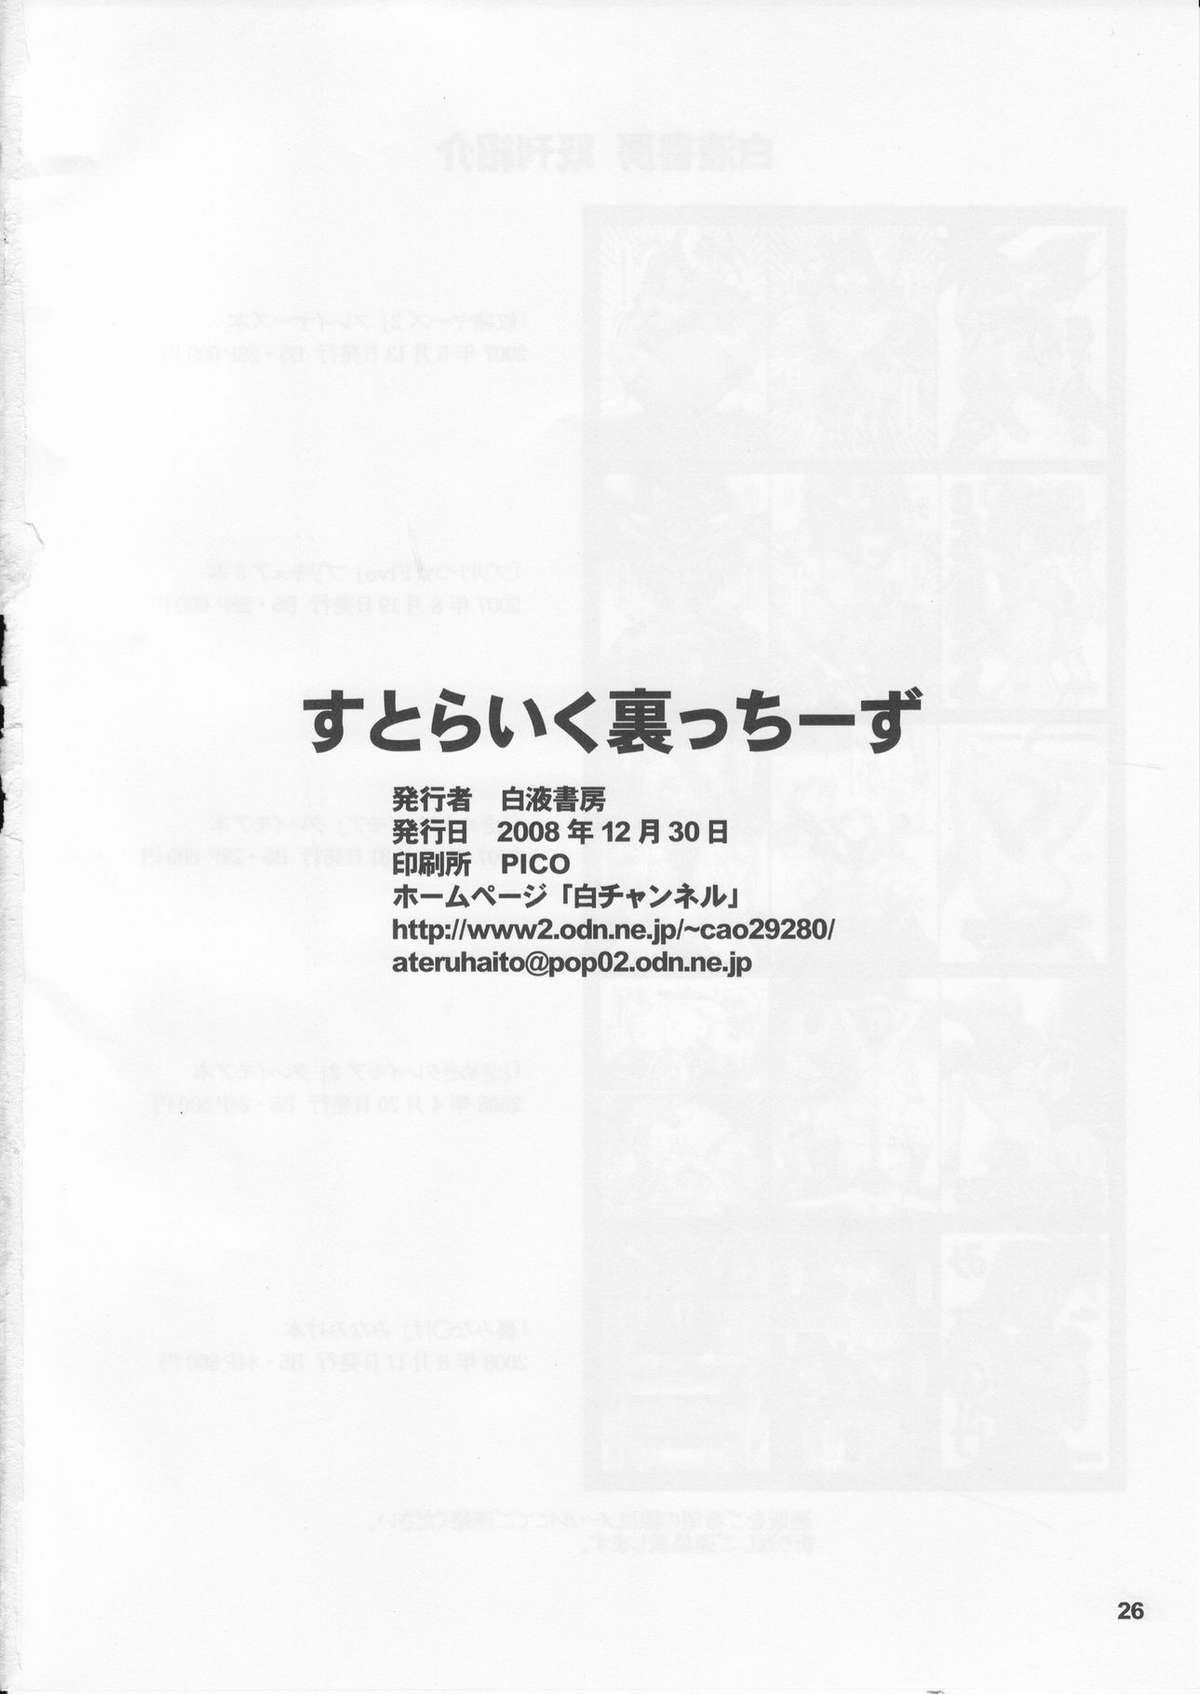 Flashing (C75) [HAKUEKI SHOBOU (A-Teru Haito)] Strike-Ura-Tches (Strike Witches) - Strike witches Game - Page 25